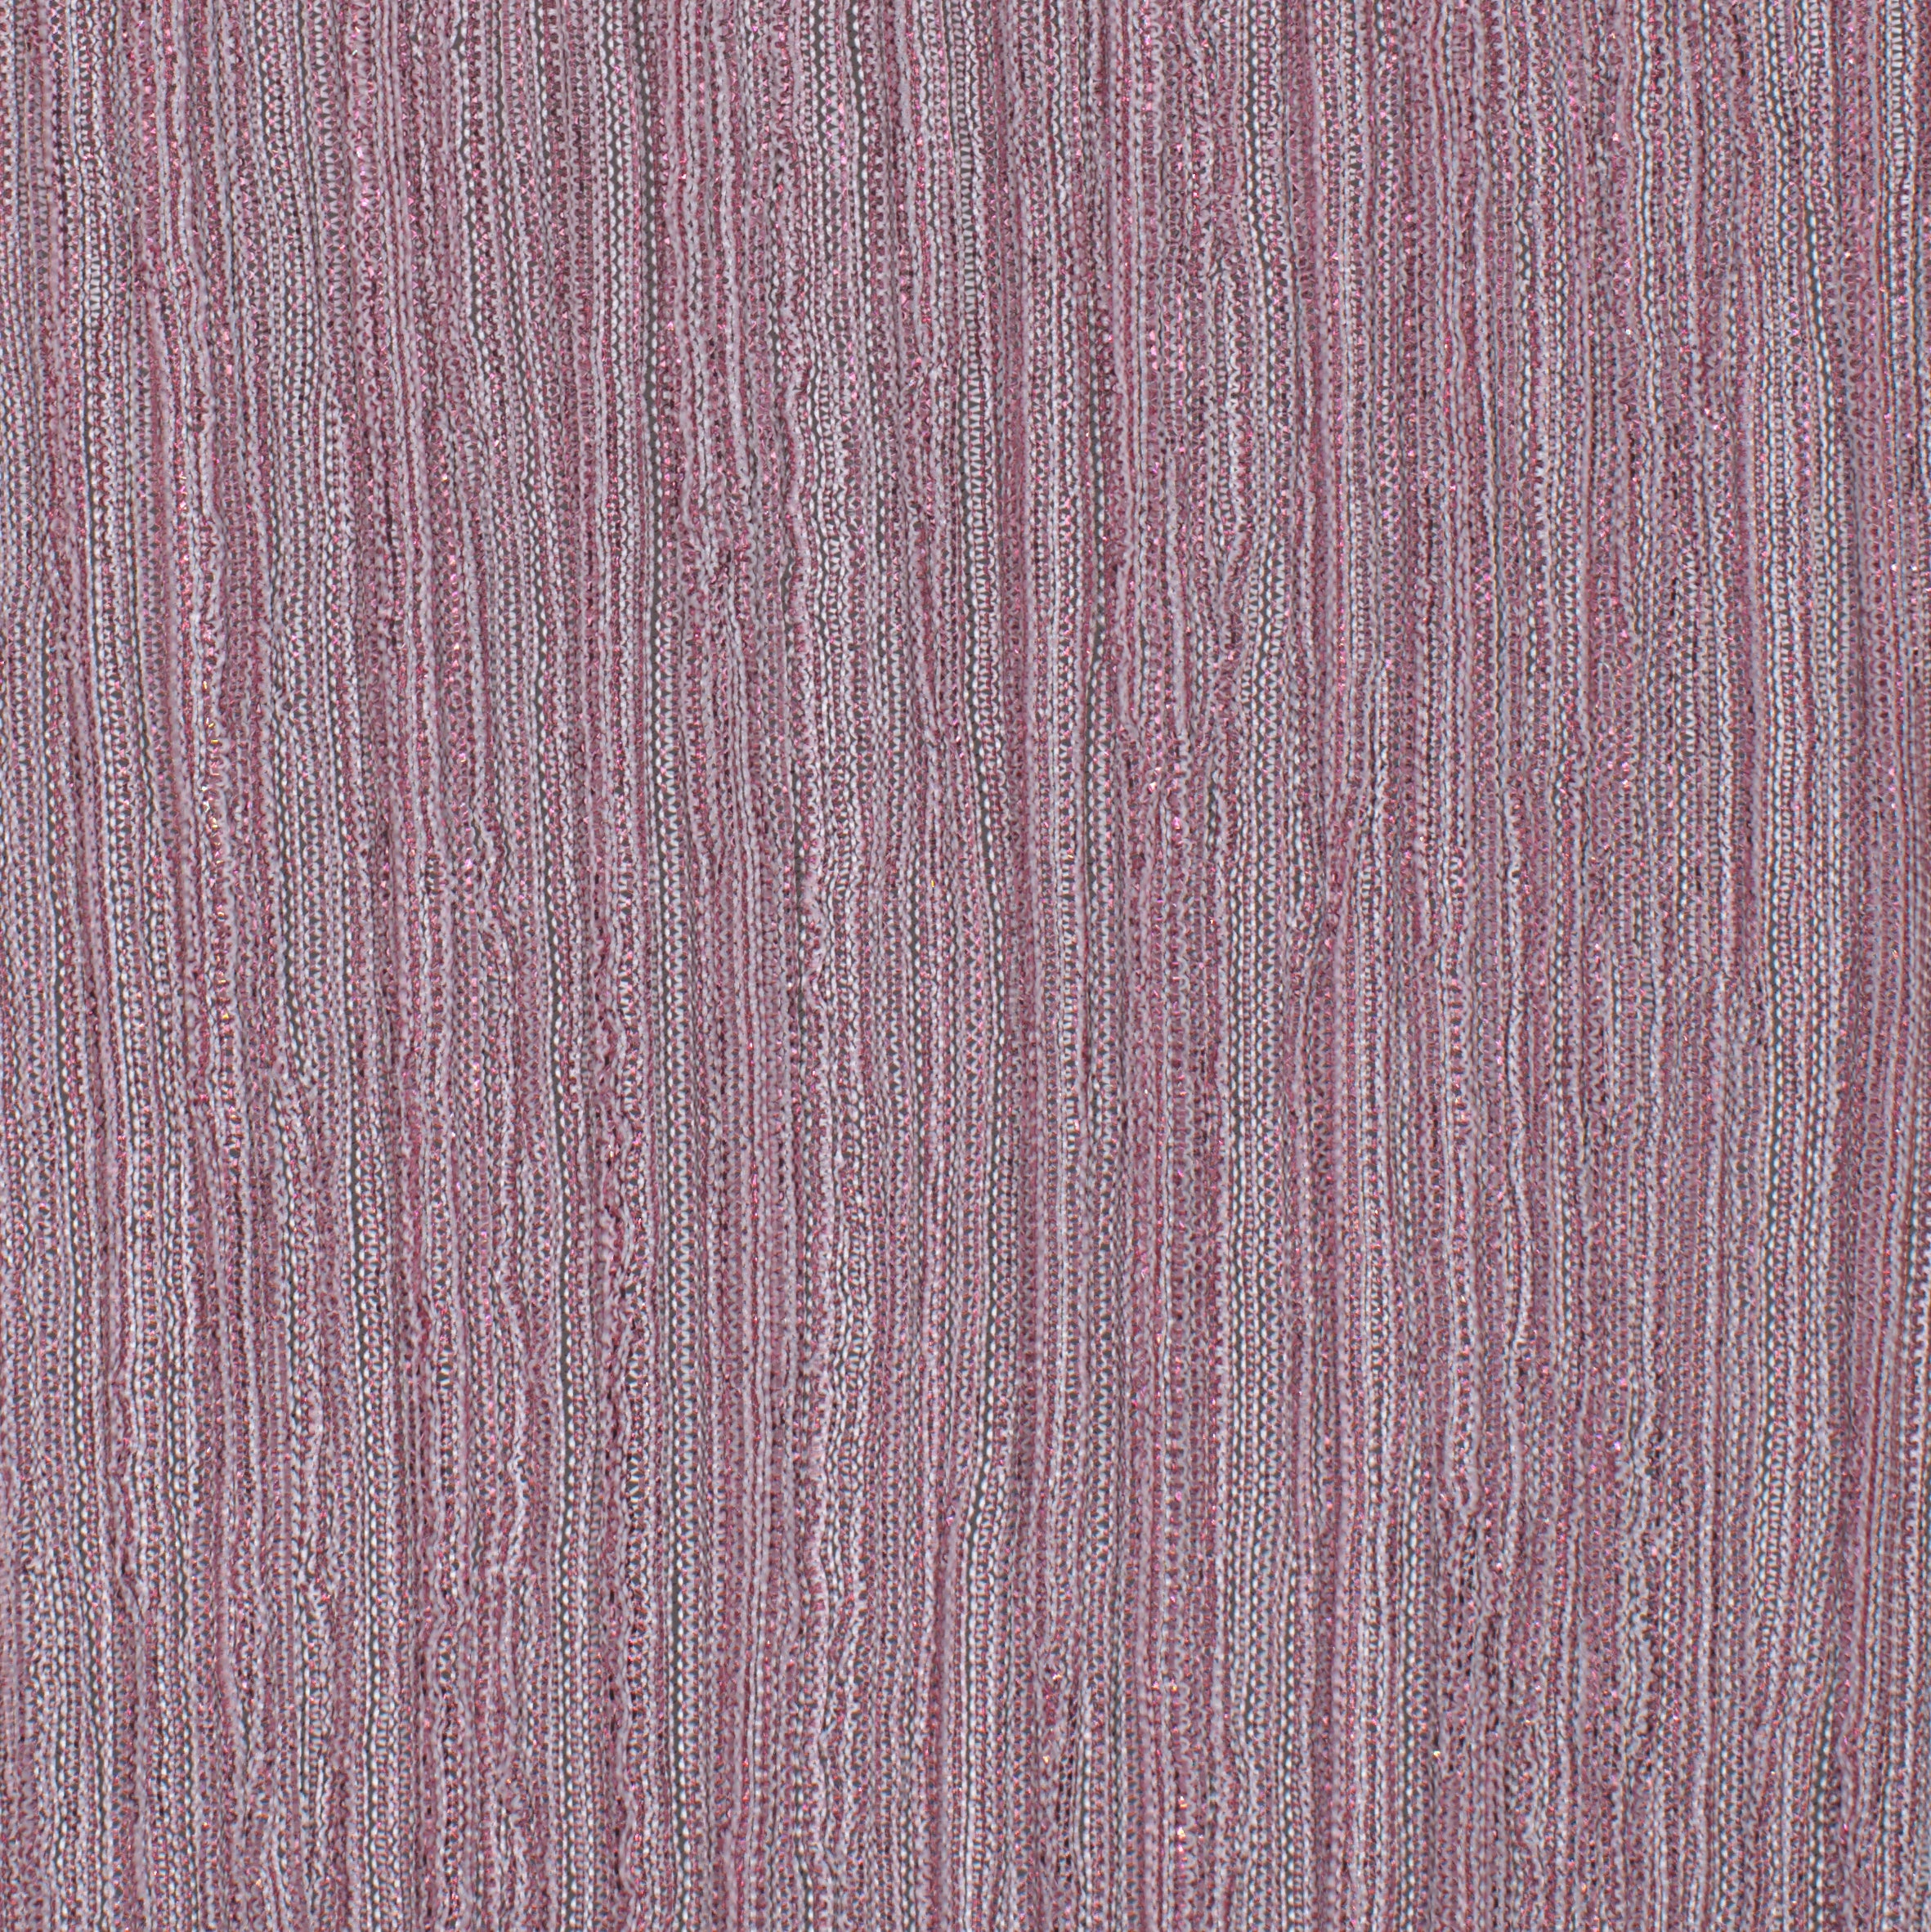 12006-16 Rose Pink Pink Metallic Pleat Plain Dyed Blend 126g/yd 56&quot; blend knit metallic pink plain dyed pleat ppl new Metallic, Pleat - knit fabric - woven fabric - fabric company - fabric wholesale - fabric b2b - fabric factory - high quality fabric - hong kong fabric - fabric hk - acetate fabric - cotton fabric - linen fabric - metallic fabric - nylon fabric - polyester fabric - spandex fabric - chun wing hing - cwh hk - fabric worldwide ship - 針織布 - 梳織布 - 布料公司- 布料批發 - 香港布料 - 秦榮興